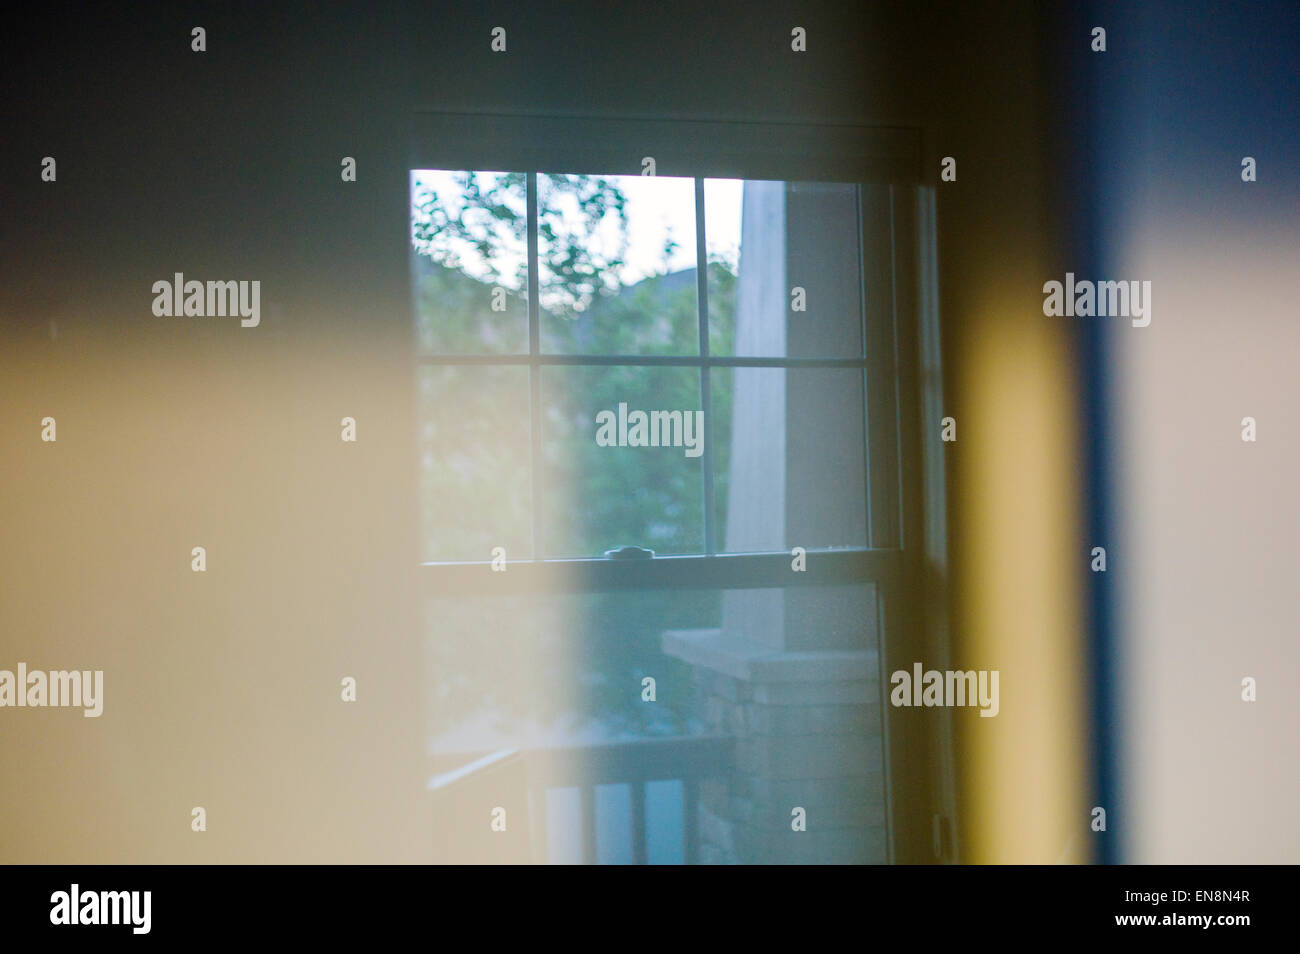 Résumé de l'intérieur Vue d'une fenêtre dans une maison de style Craftsman, Salida, Colorado, USA Banque D'Images